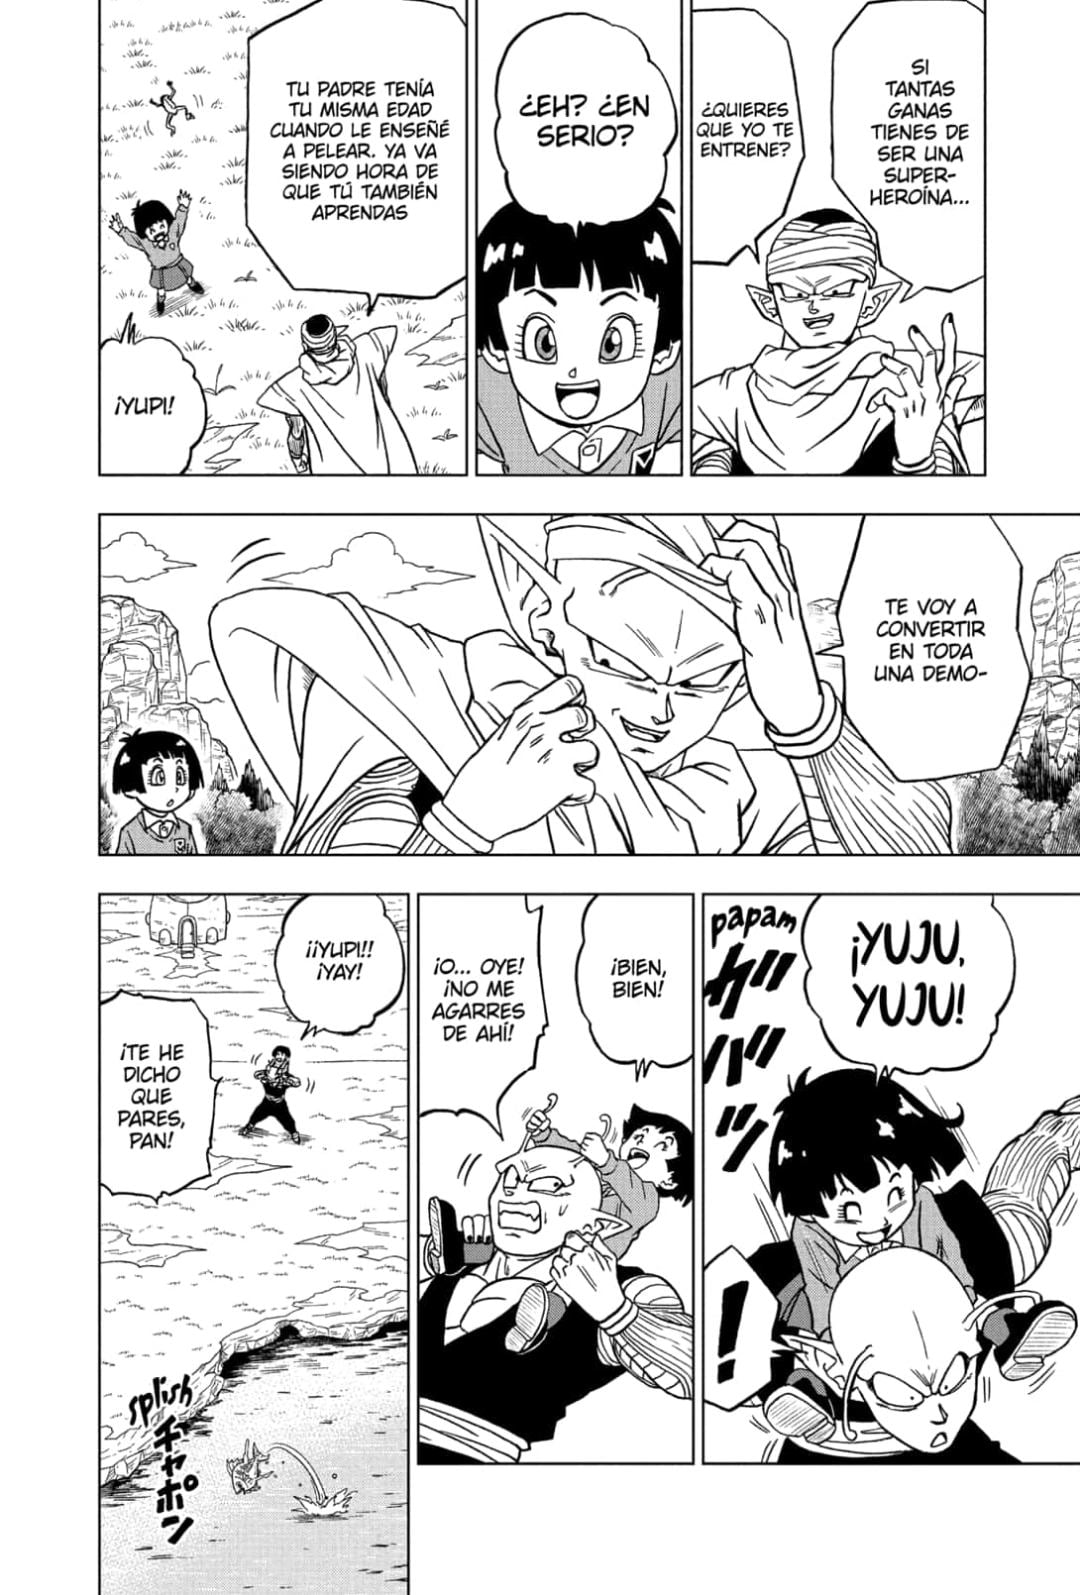 Sekai DB - ¿Qué? 👀 El capítulo 91 del manga de Dragon Ball Super ha sido  filtrado. Scans en HD y con traducción de fans en Inglés xd 😑 (Link en los